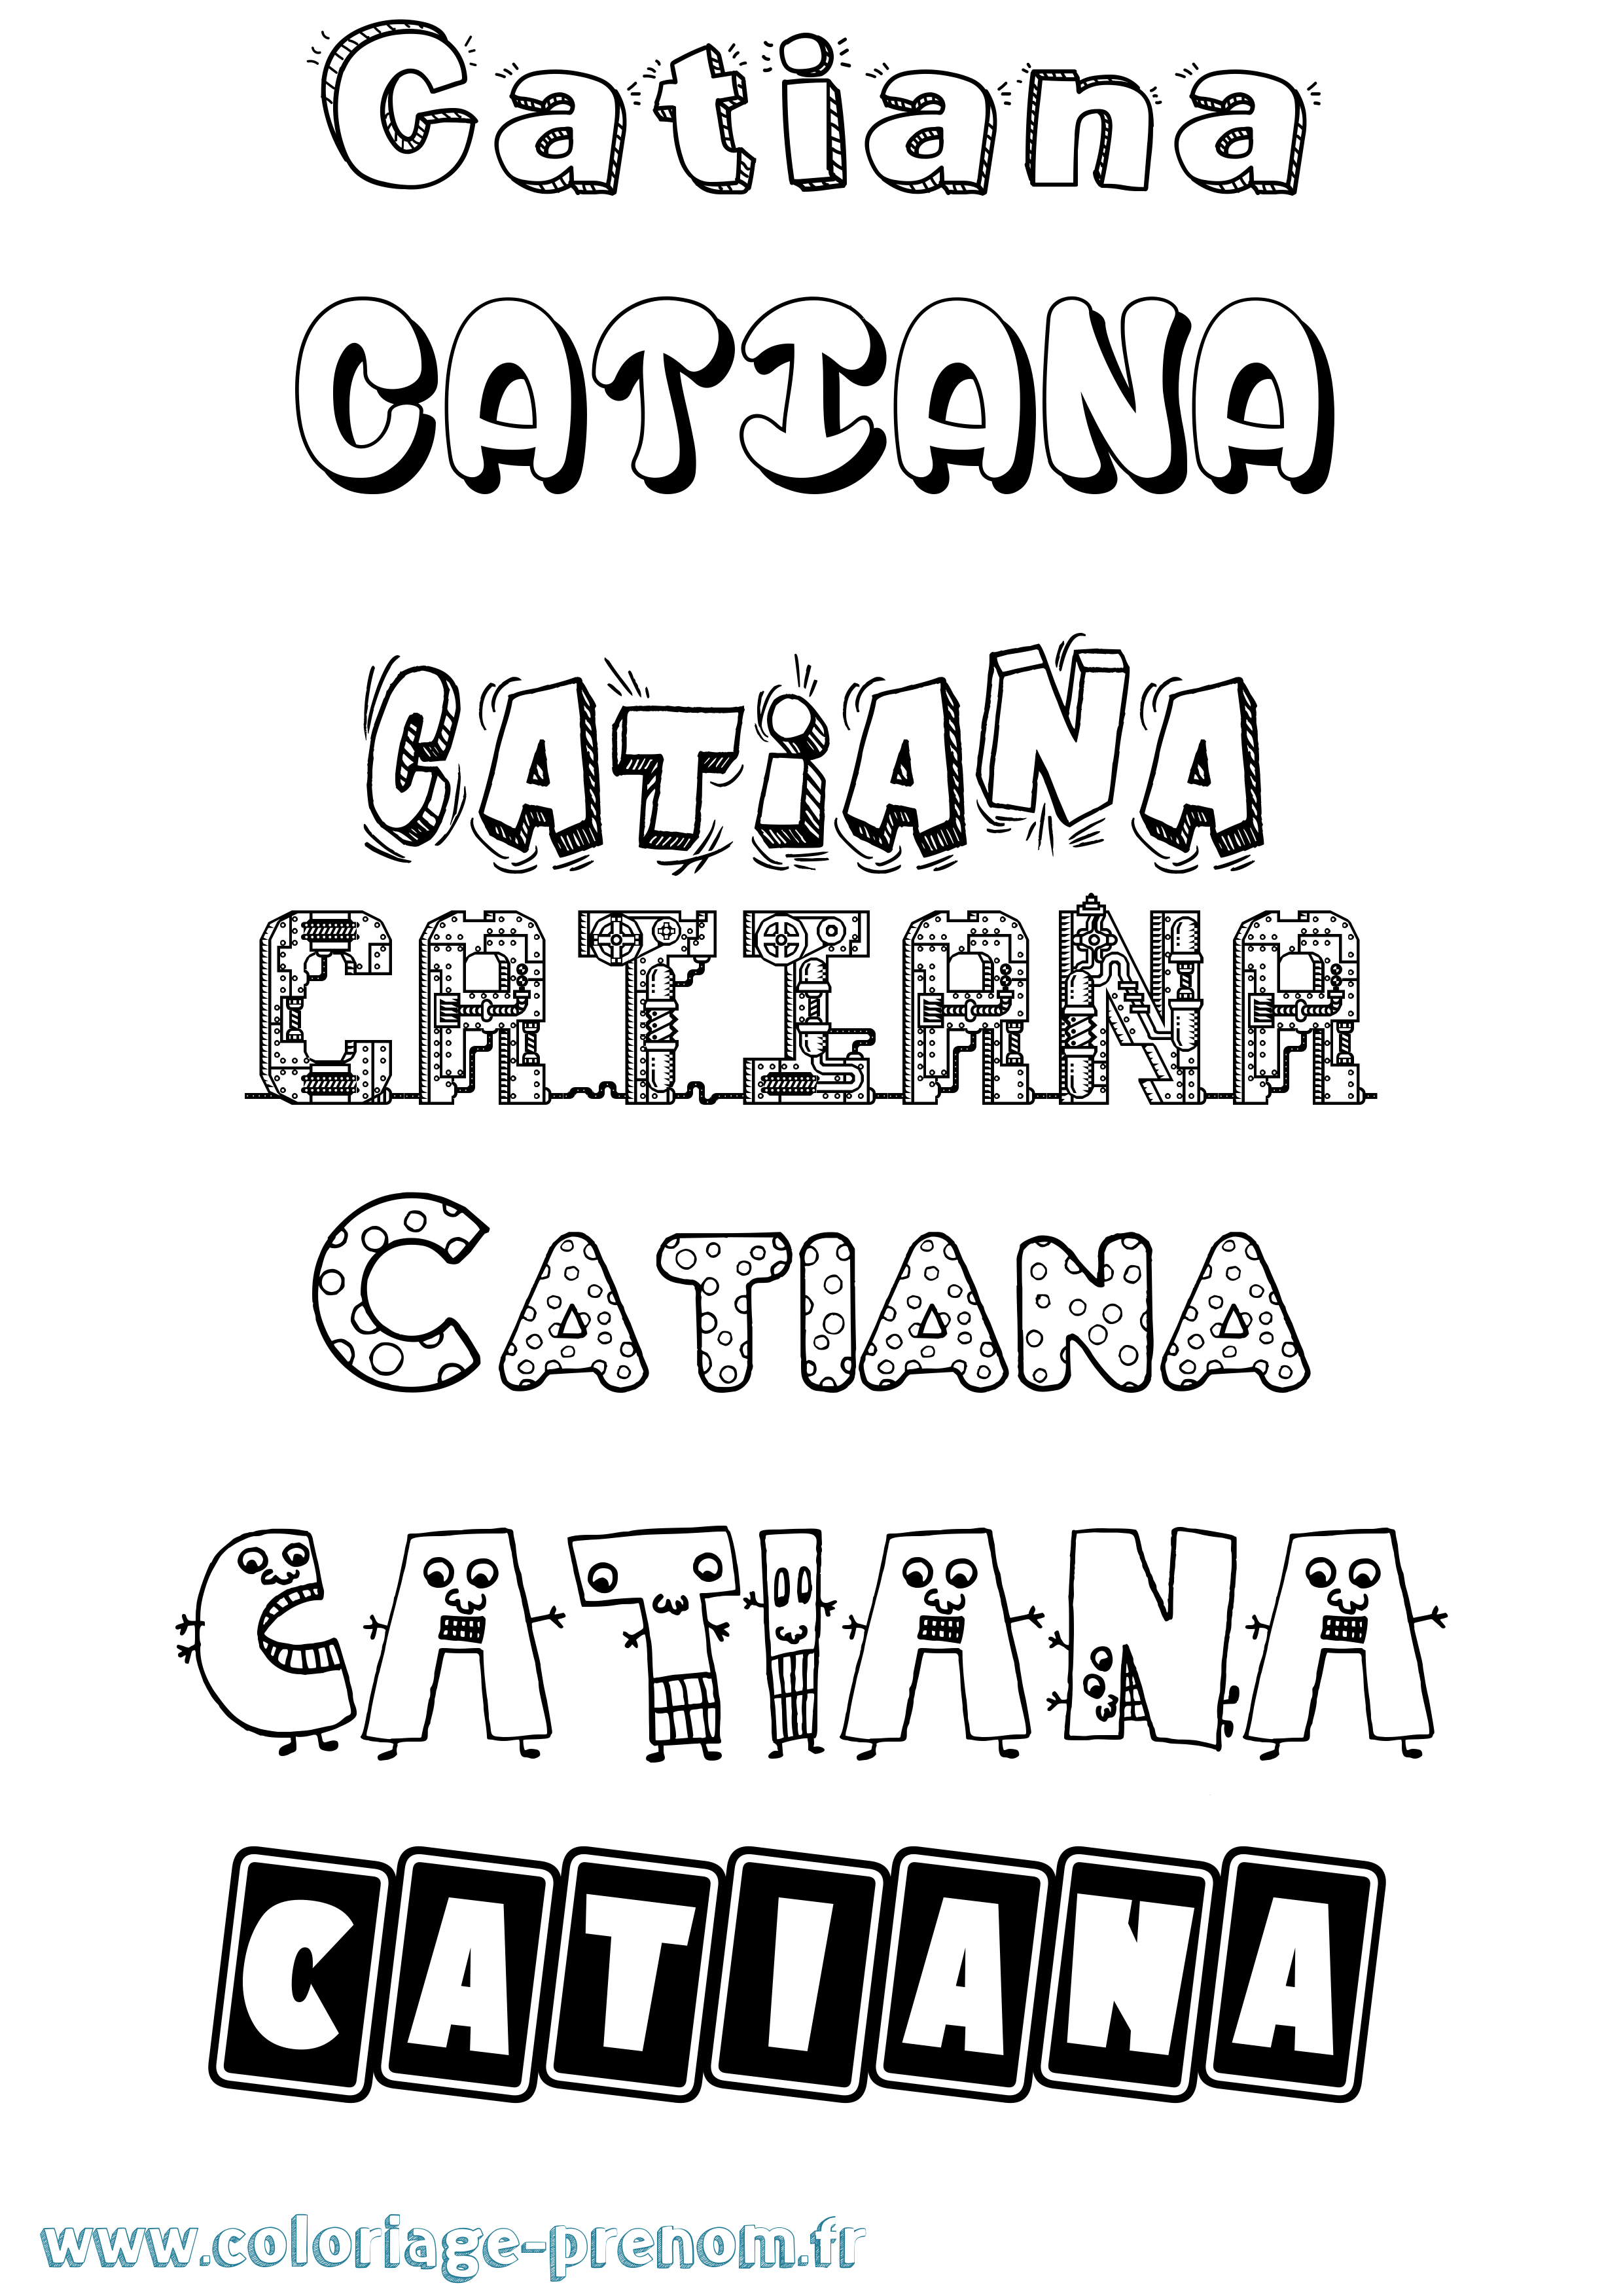 Coloriage prénom Catiana Fun